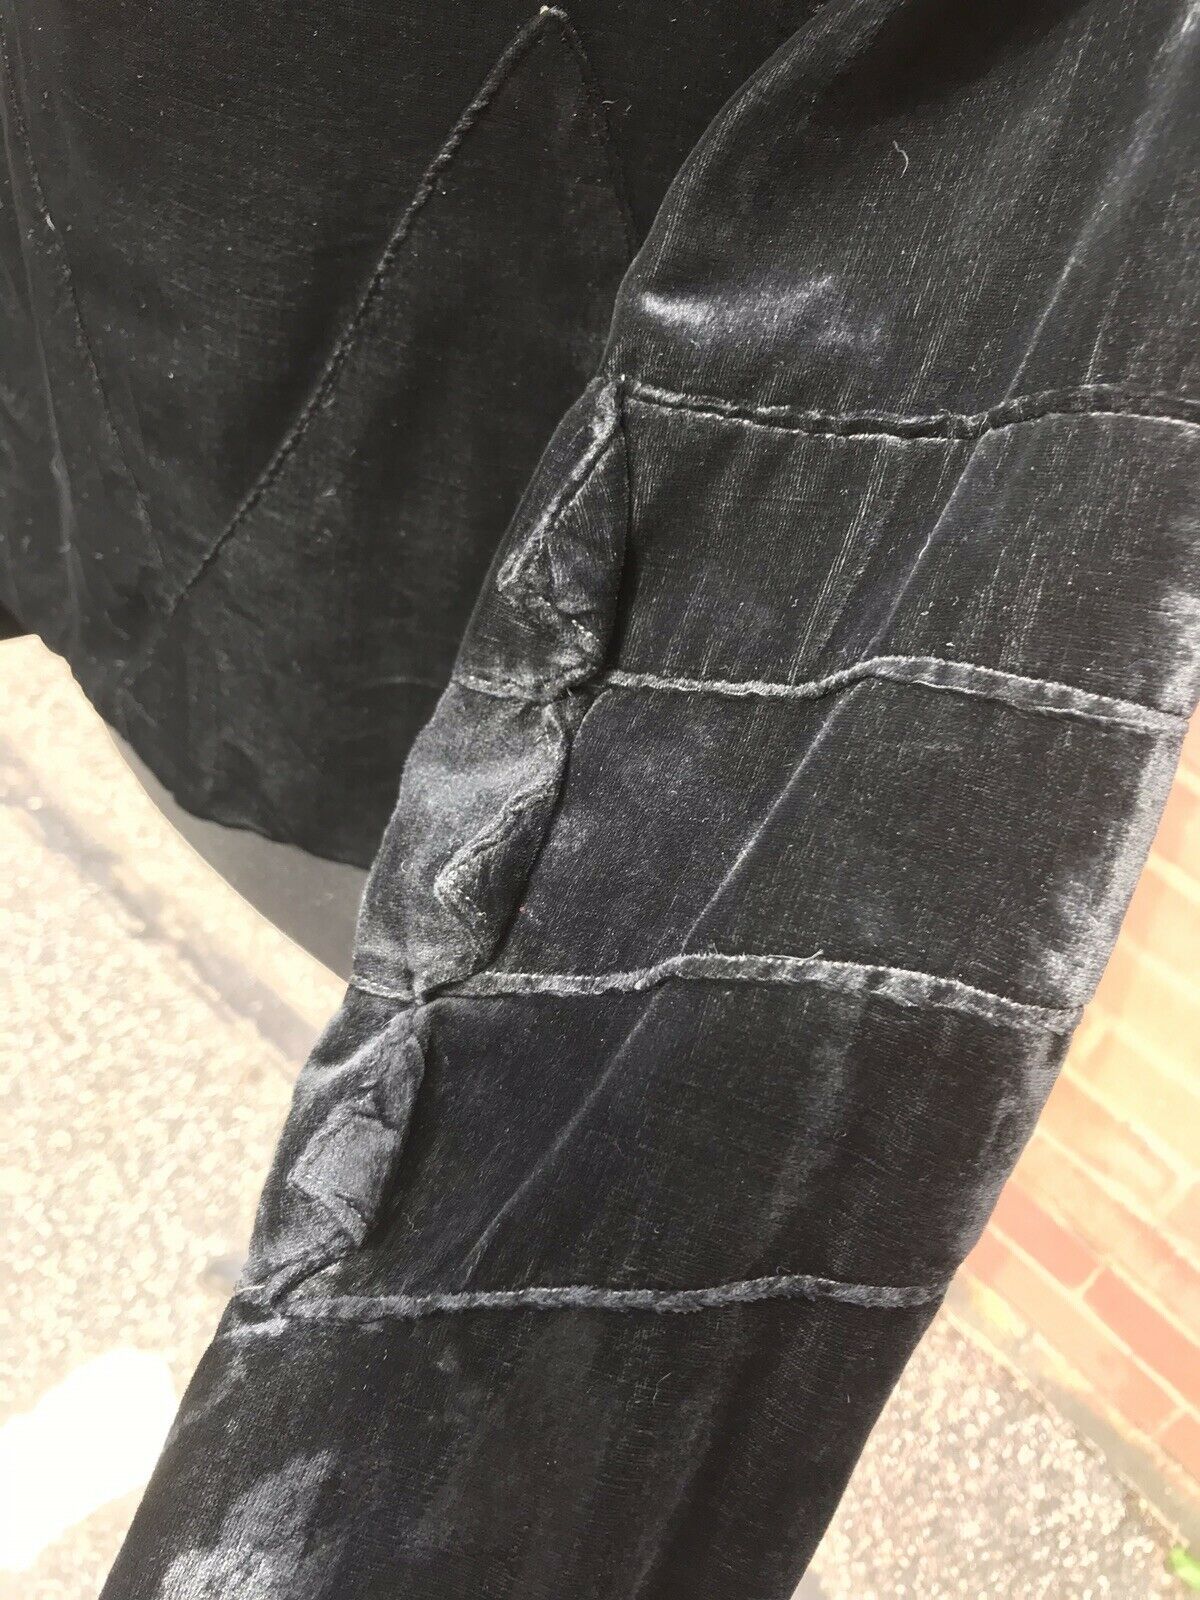 True Vintage Black Velvet Short Jacket Detail To Arms